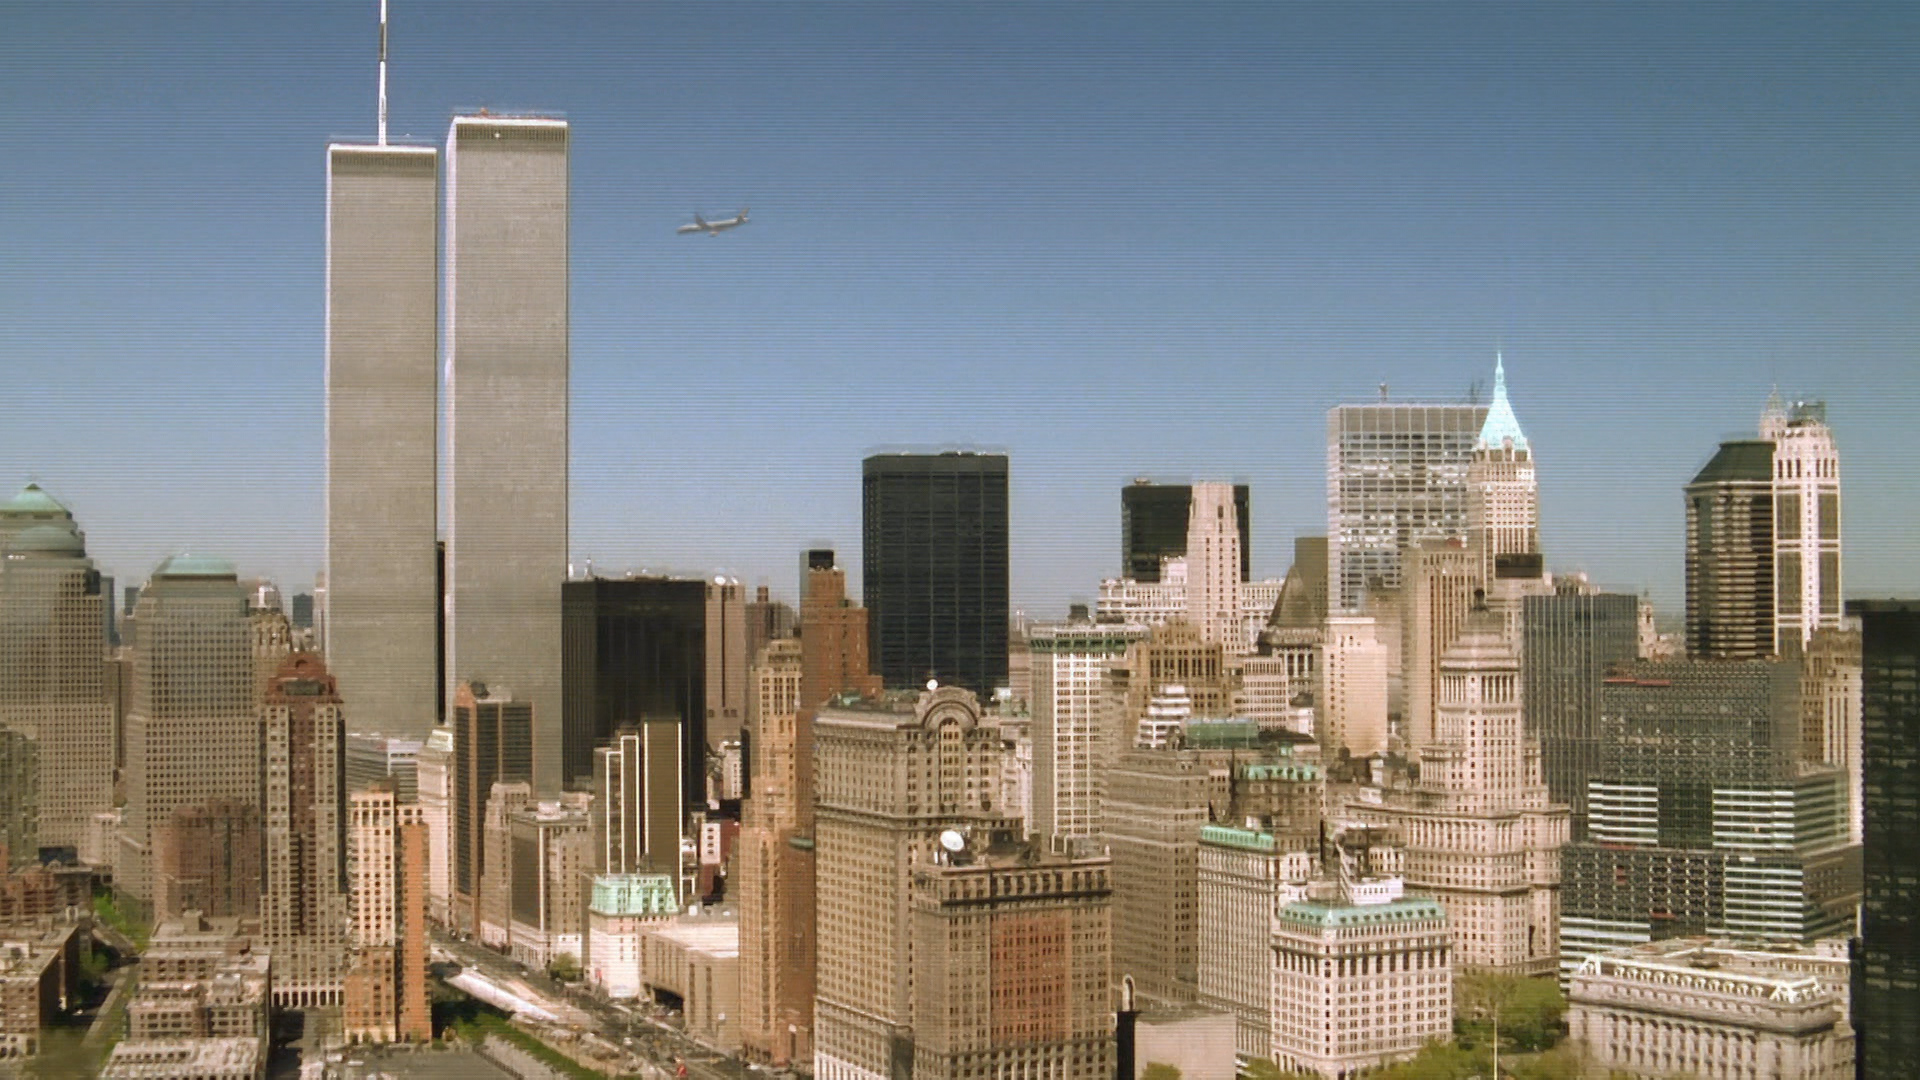 Архив 2001 года. Башни Близнецы 11 сентября. ВТЦ Нью-Йорк 2020. Нью Йорк 2001. ВТЦ Нью-Йорк сейчас.